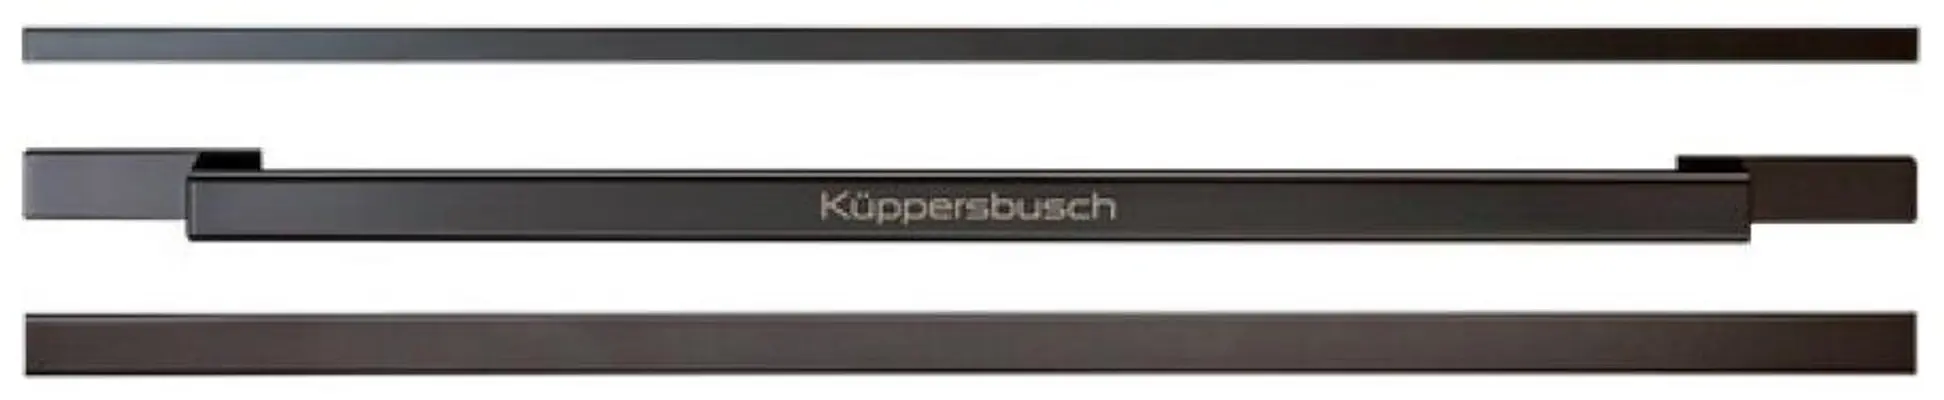 DK2000-Kuppersbusch-Oven-accessoires